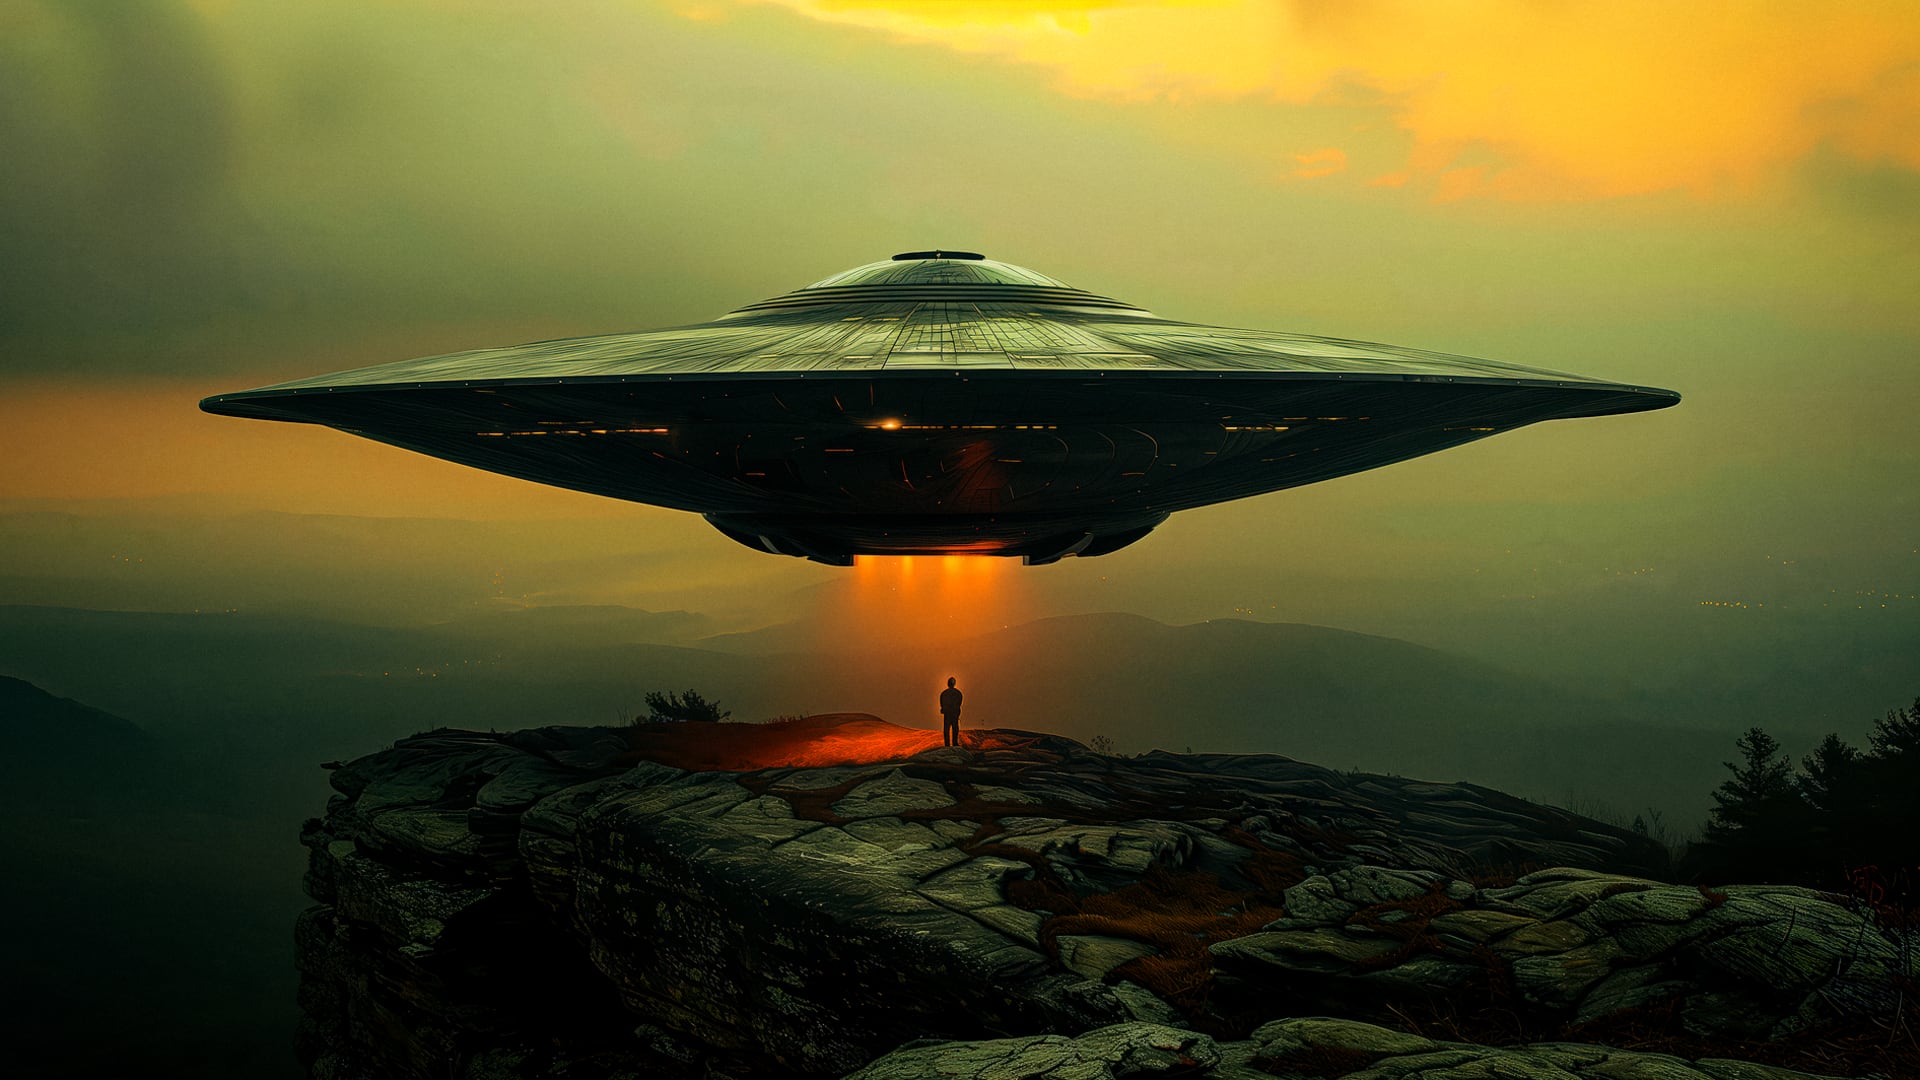 हार्वर्ड के वैज्ञानिकों का दावा, पृथ्वी पर मनुष्यों के बीच छुपकर रह सकते हैं एलियन